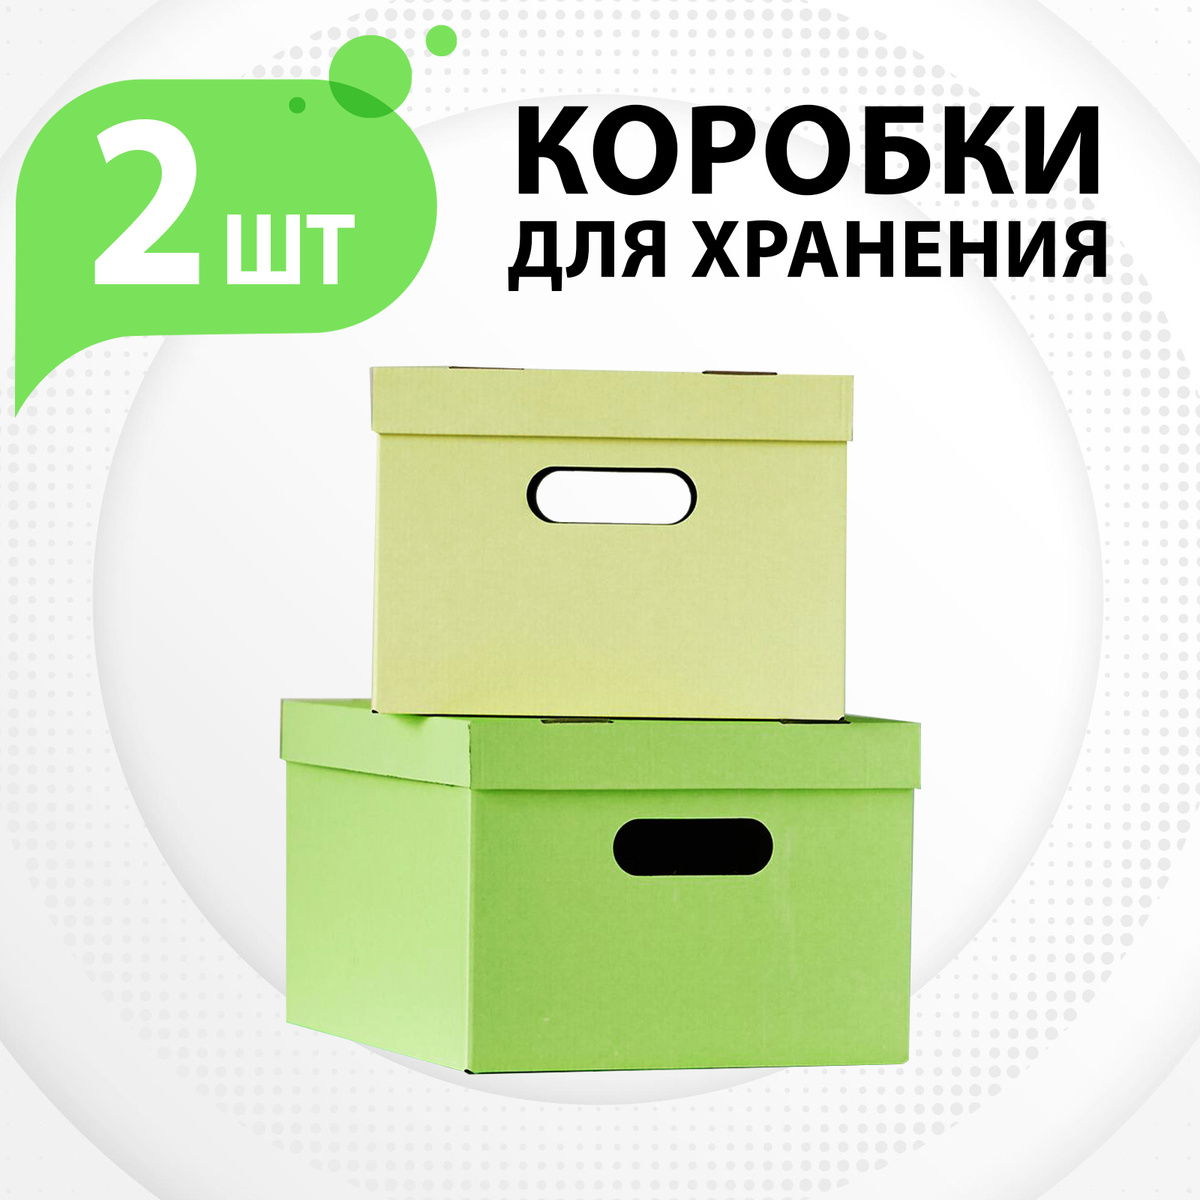 Коробка для хранения. Картонная коробка - 2 шт., жёлтая и зеленая, серия "Colors"  #1